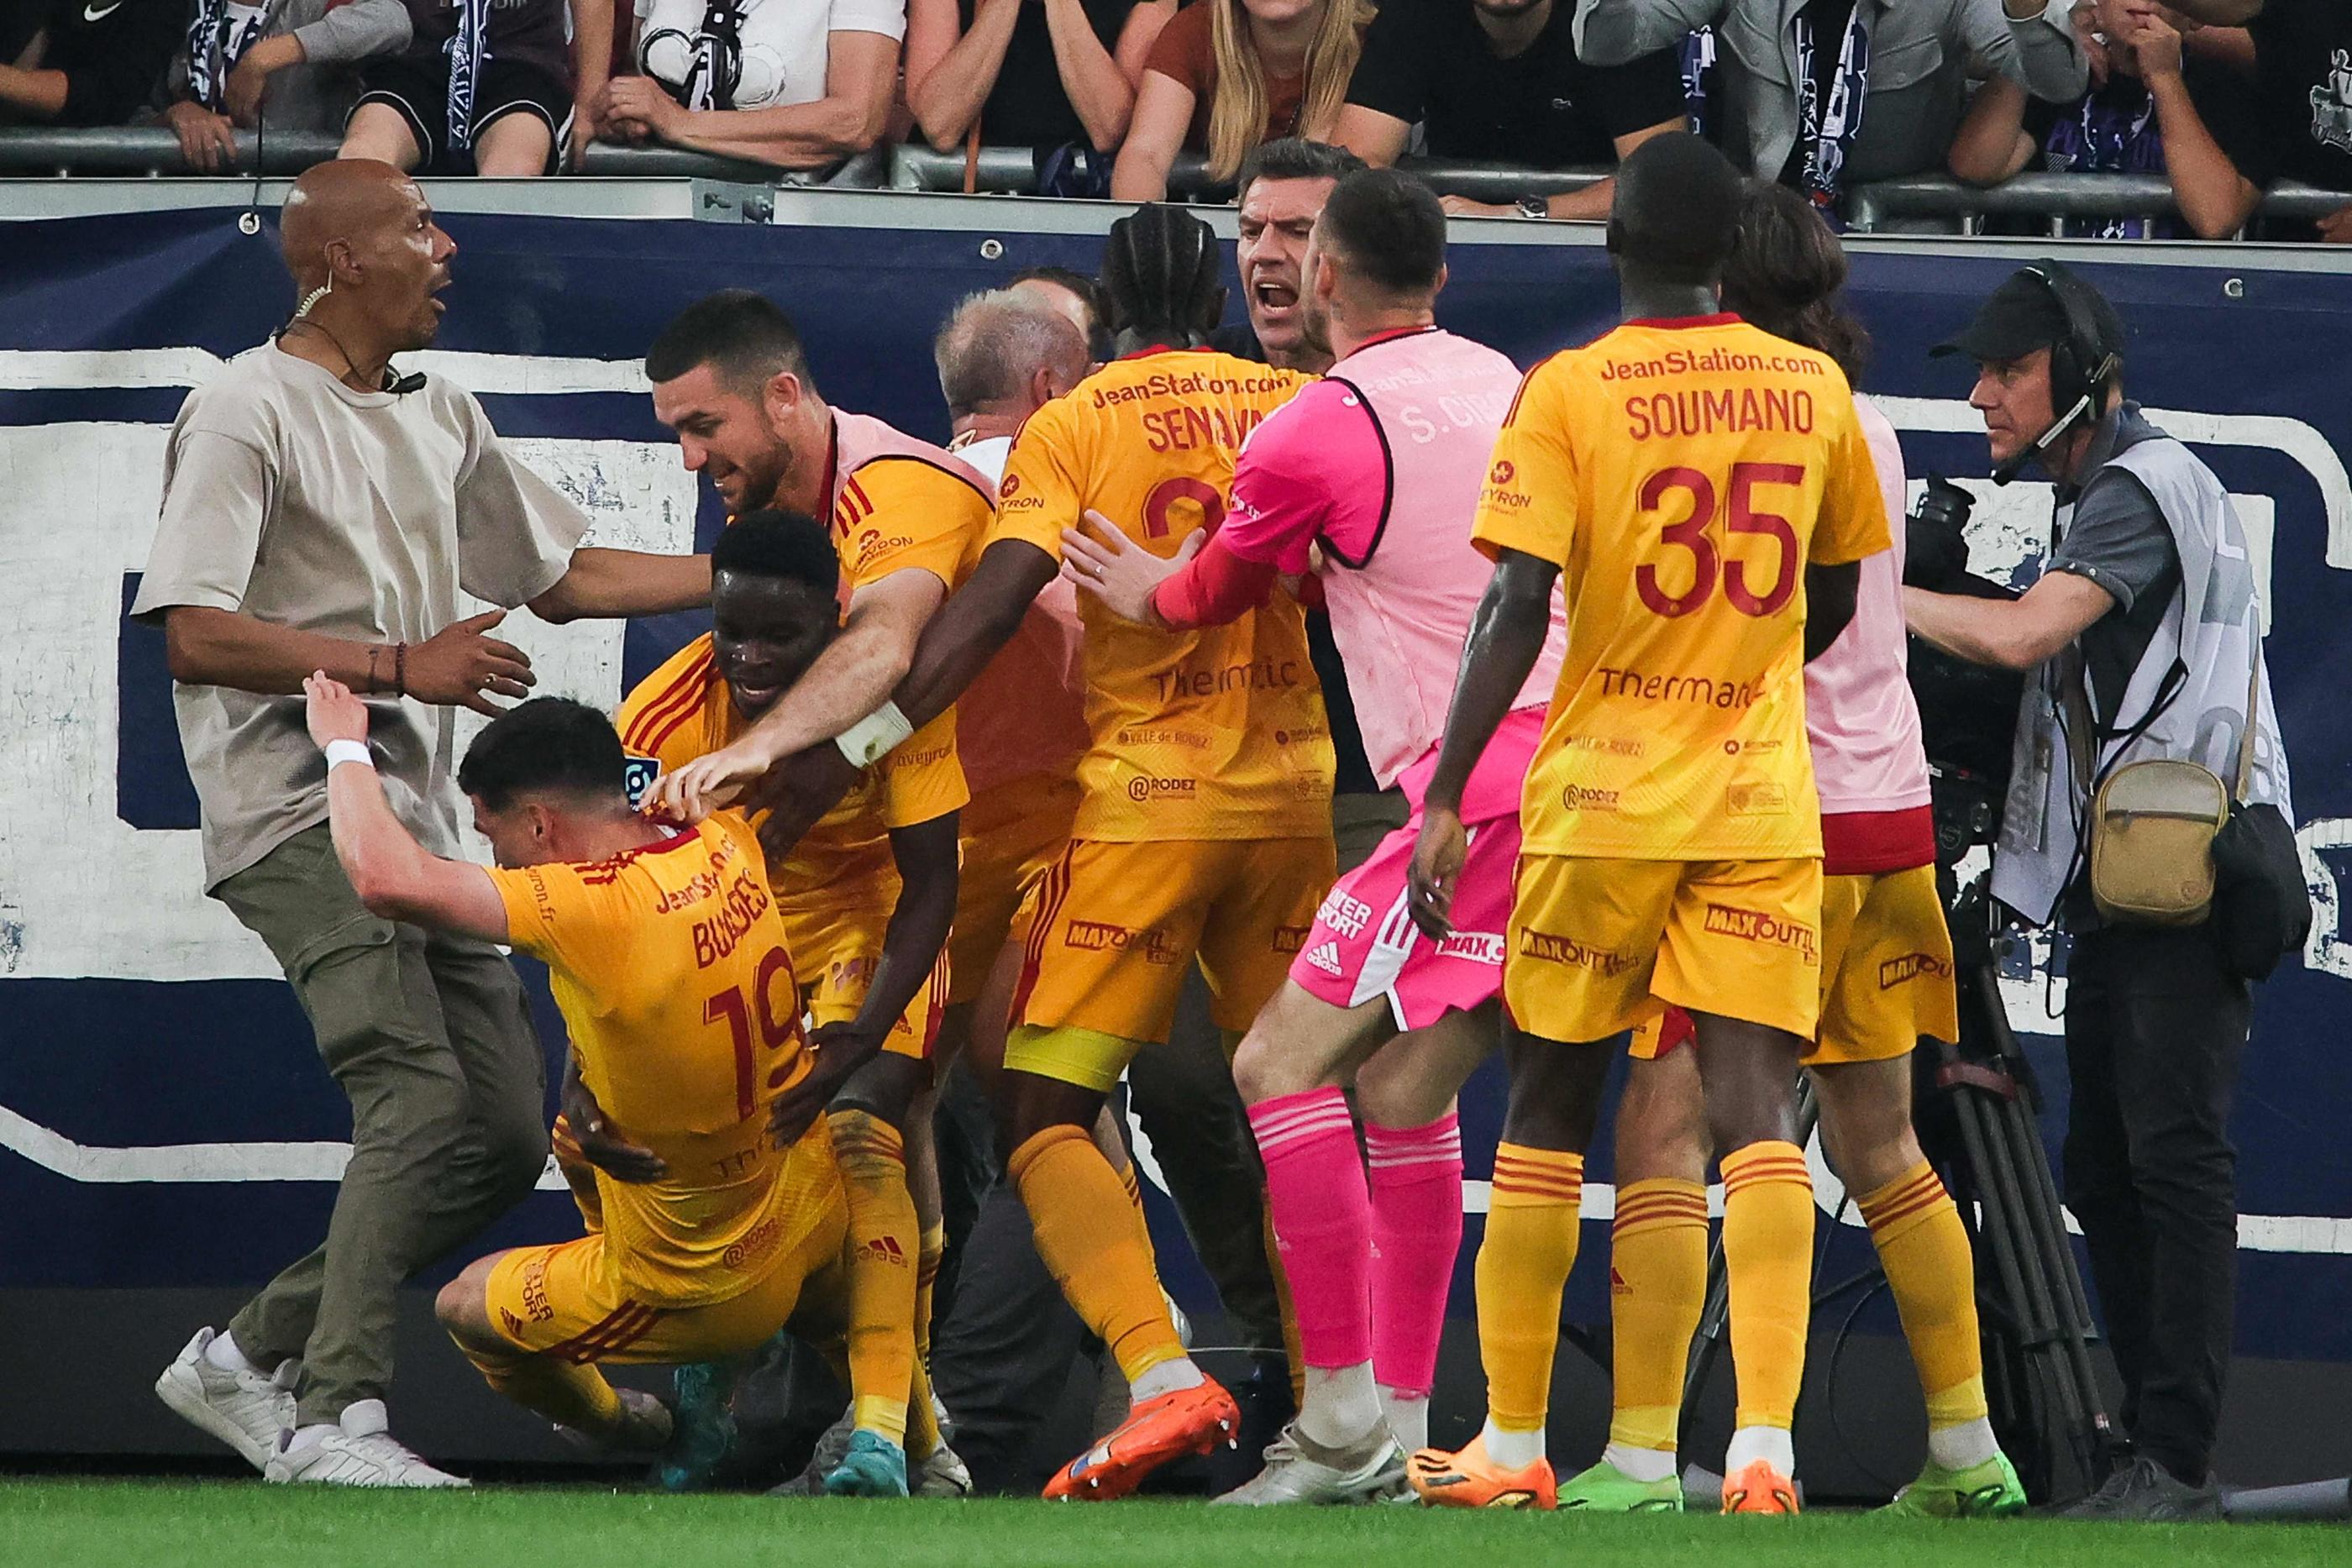 La rencontre disputée vendredi entre Bordeaux et Rodez lors de l’ultime journée de Ligue 2 a été interrompue définitivement à la 22e minute. THIBAUD MORITZ / AFP.